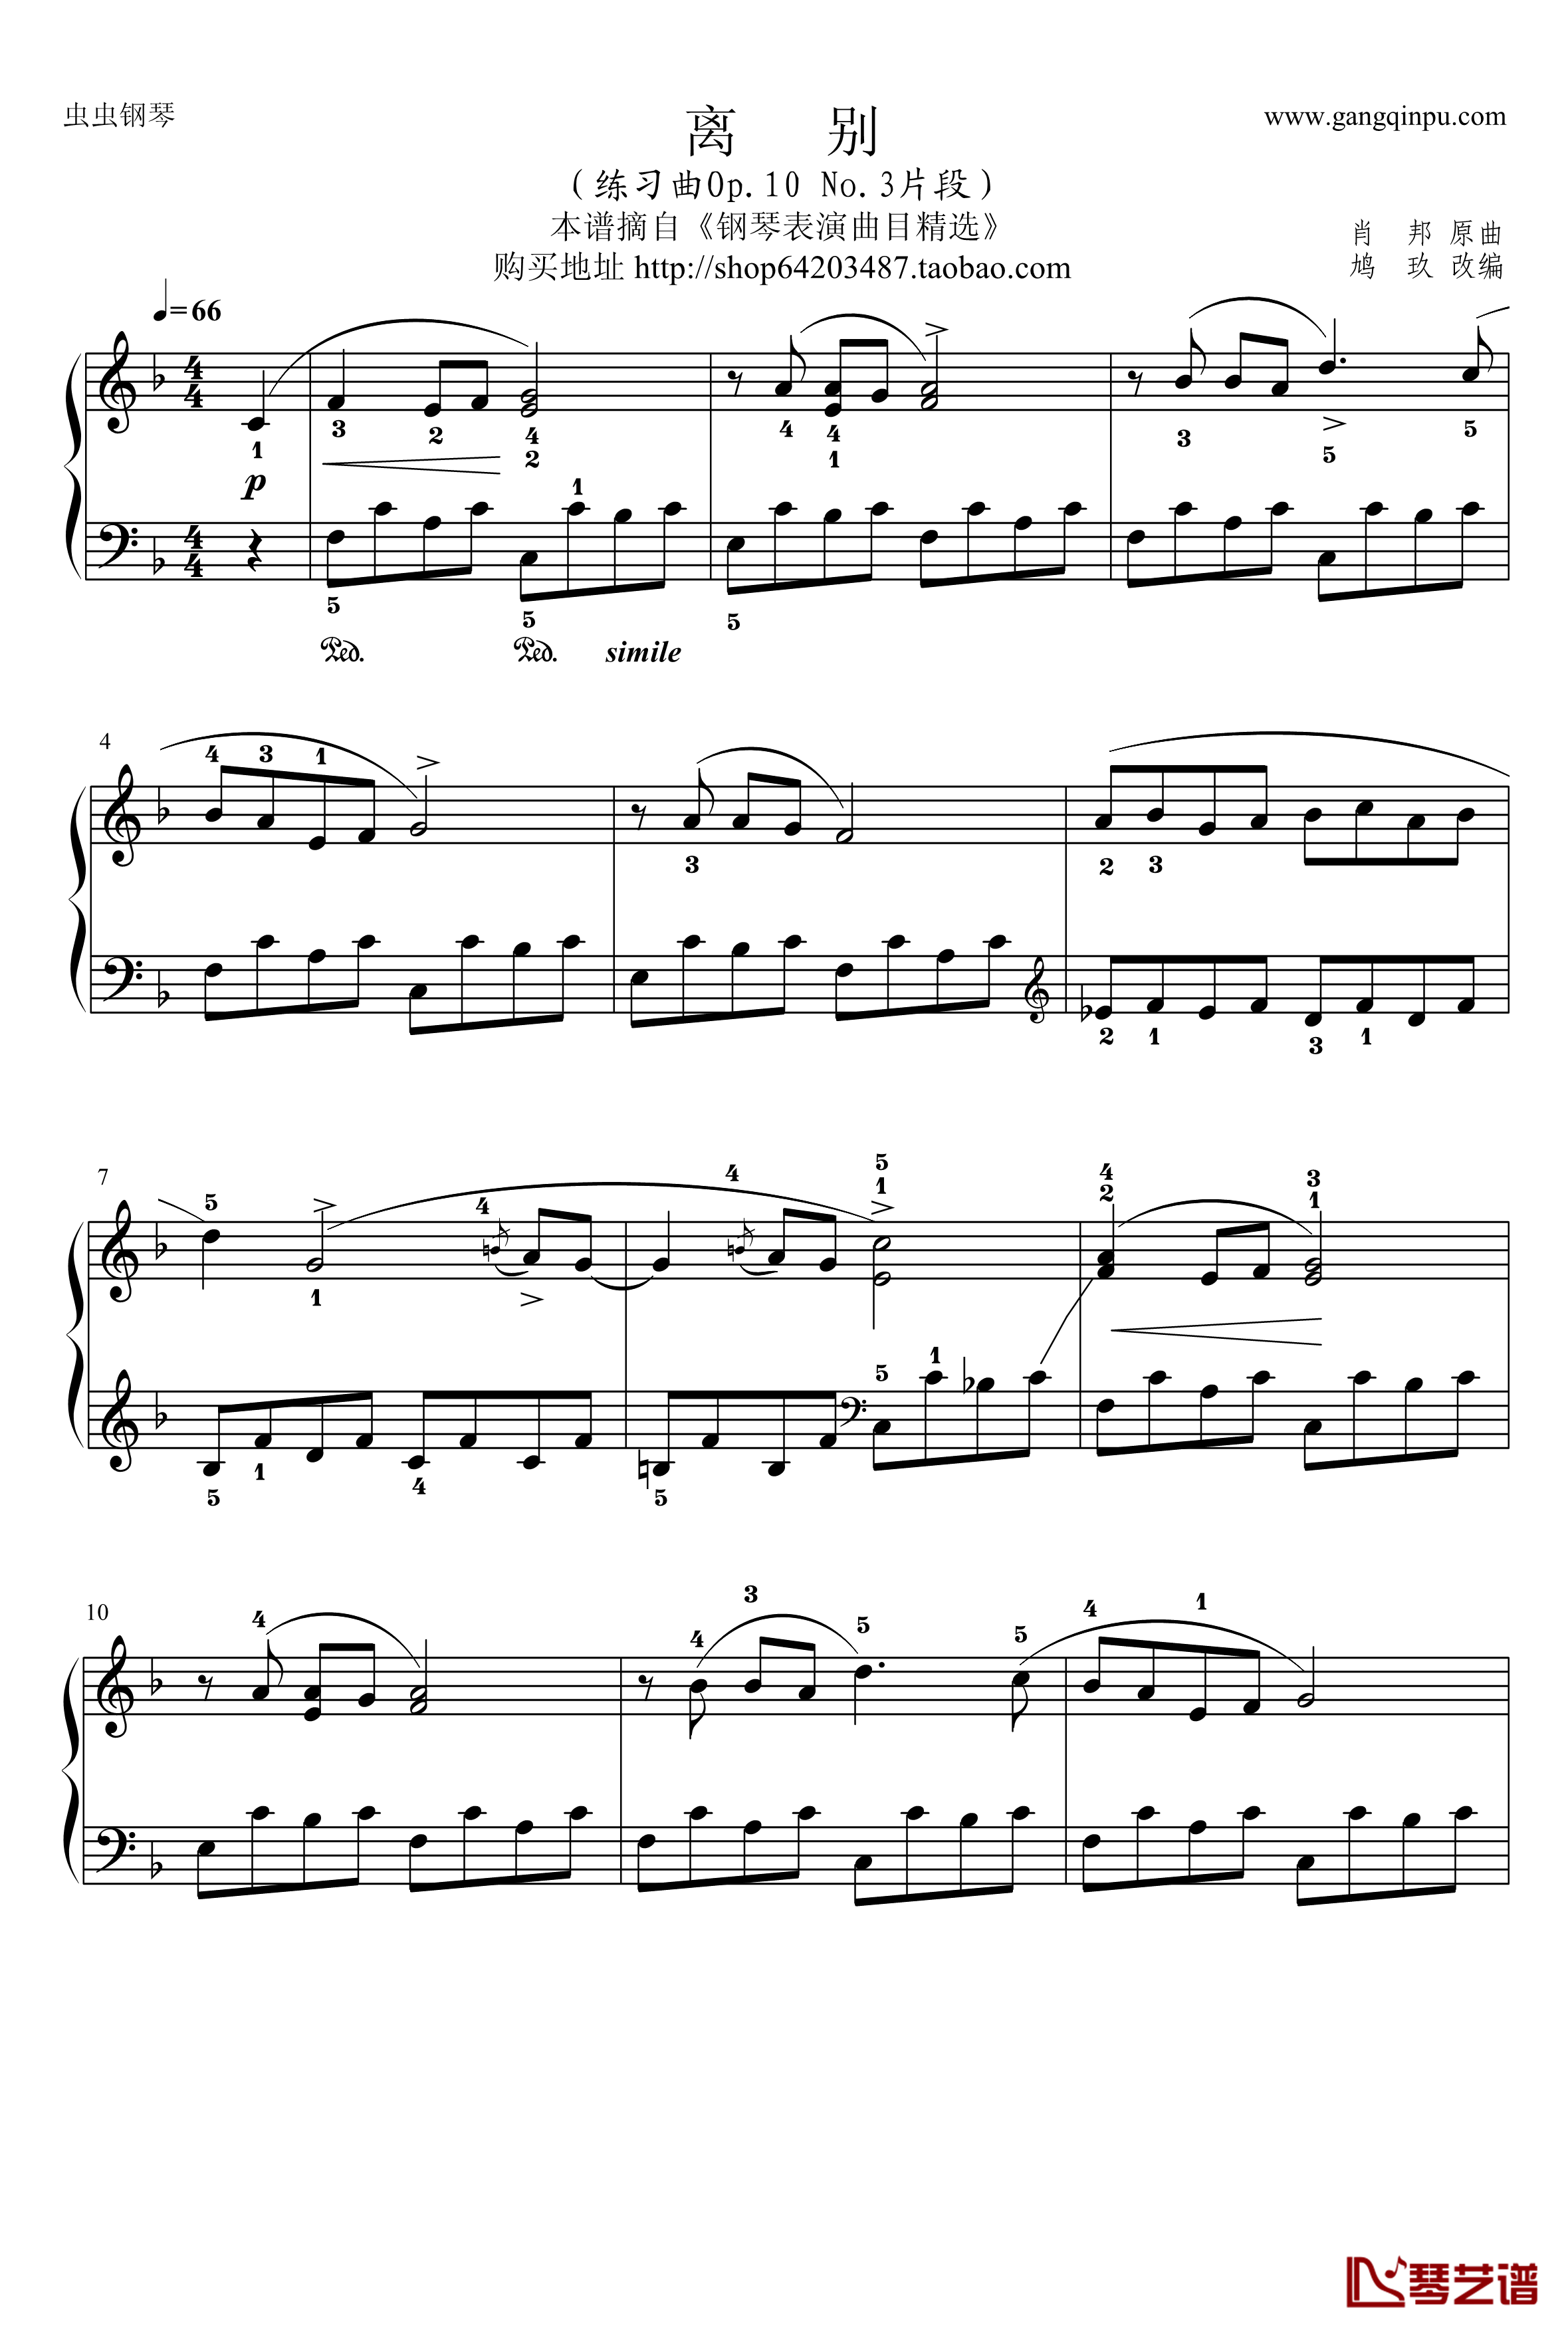 肖邦钢琴谱-离别简化版-chopin1